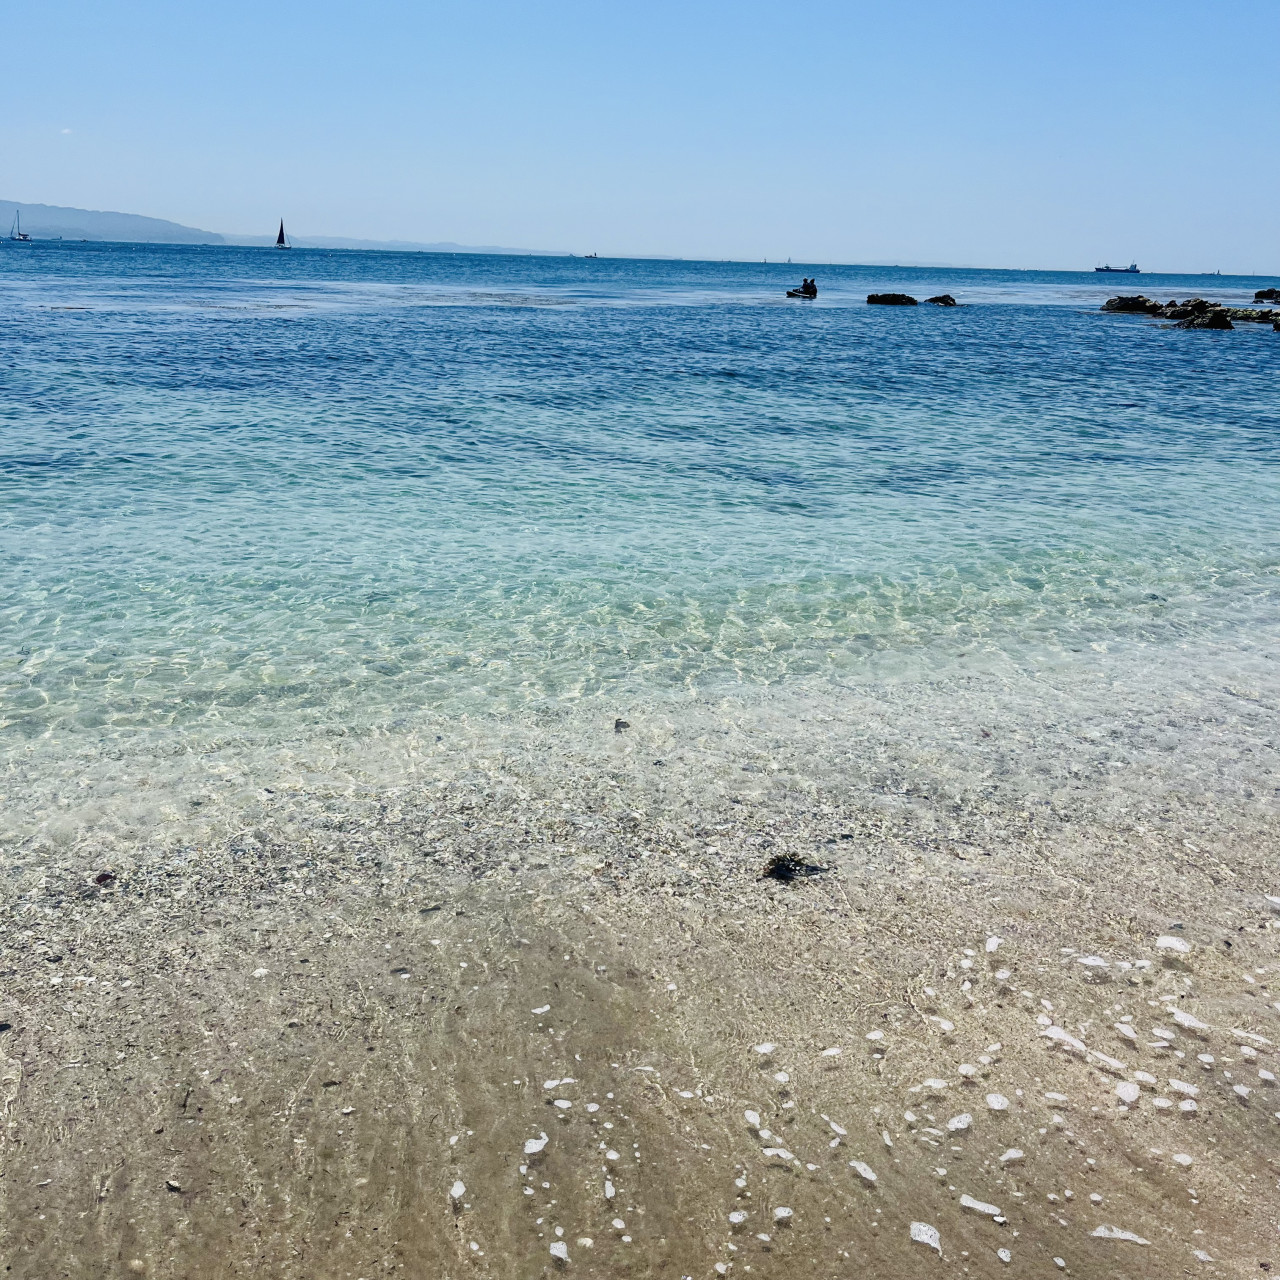 三浦半島にあり、観音崎海水浴場の隣にあるたたら浜。白い砂浜と磯遊びができる岩場があるキレイな海です。昭和29年、初代ゴジラがこの浜辺に上陸したことで知られている場所でもあります。